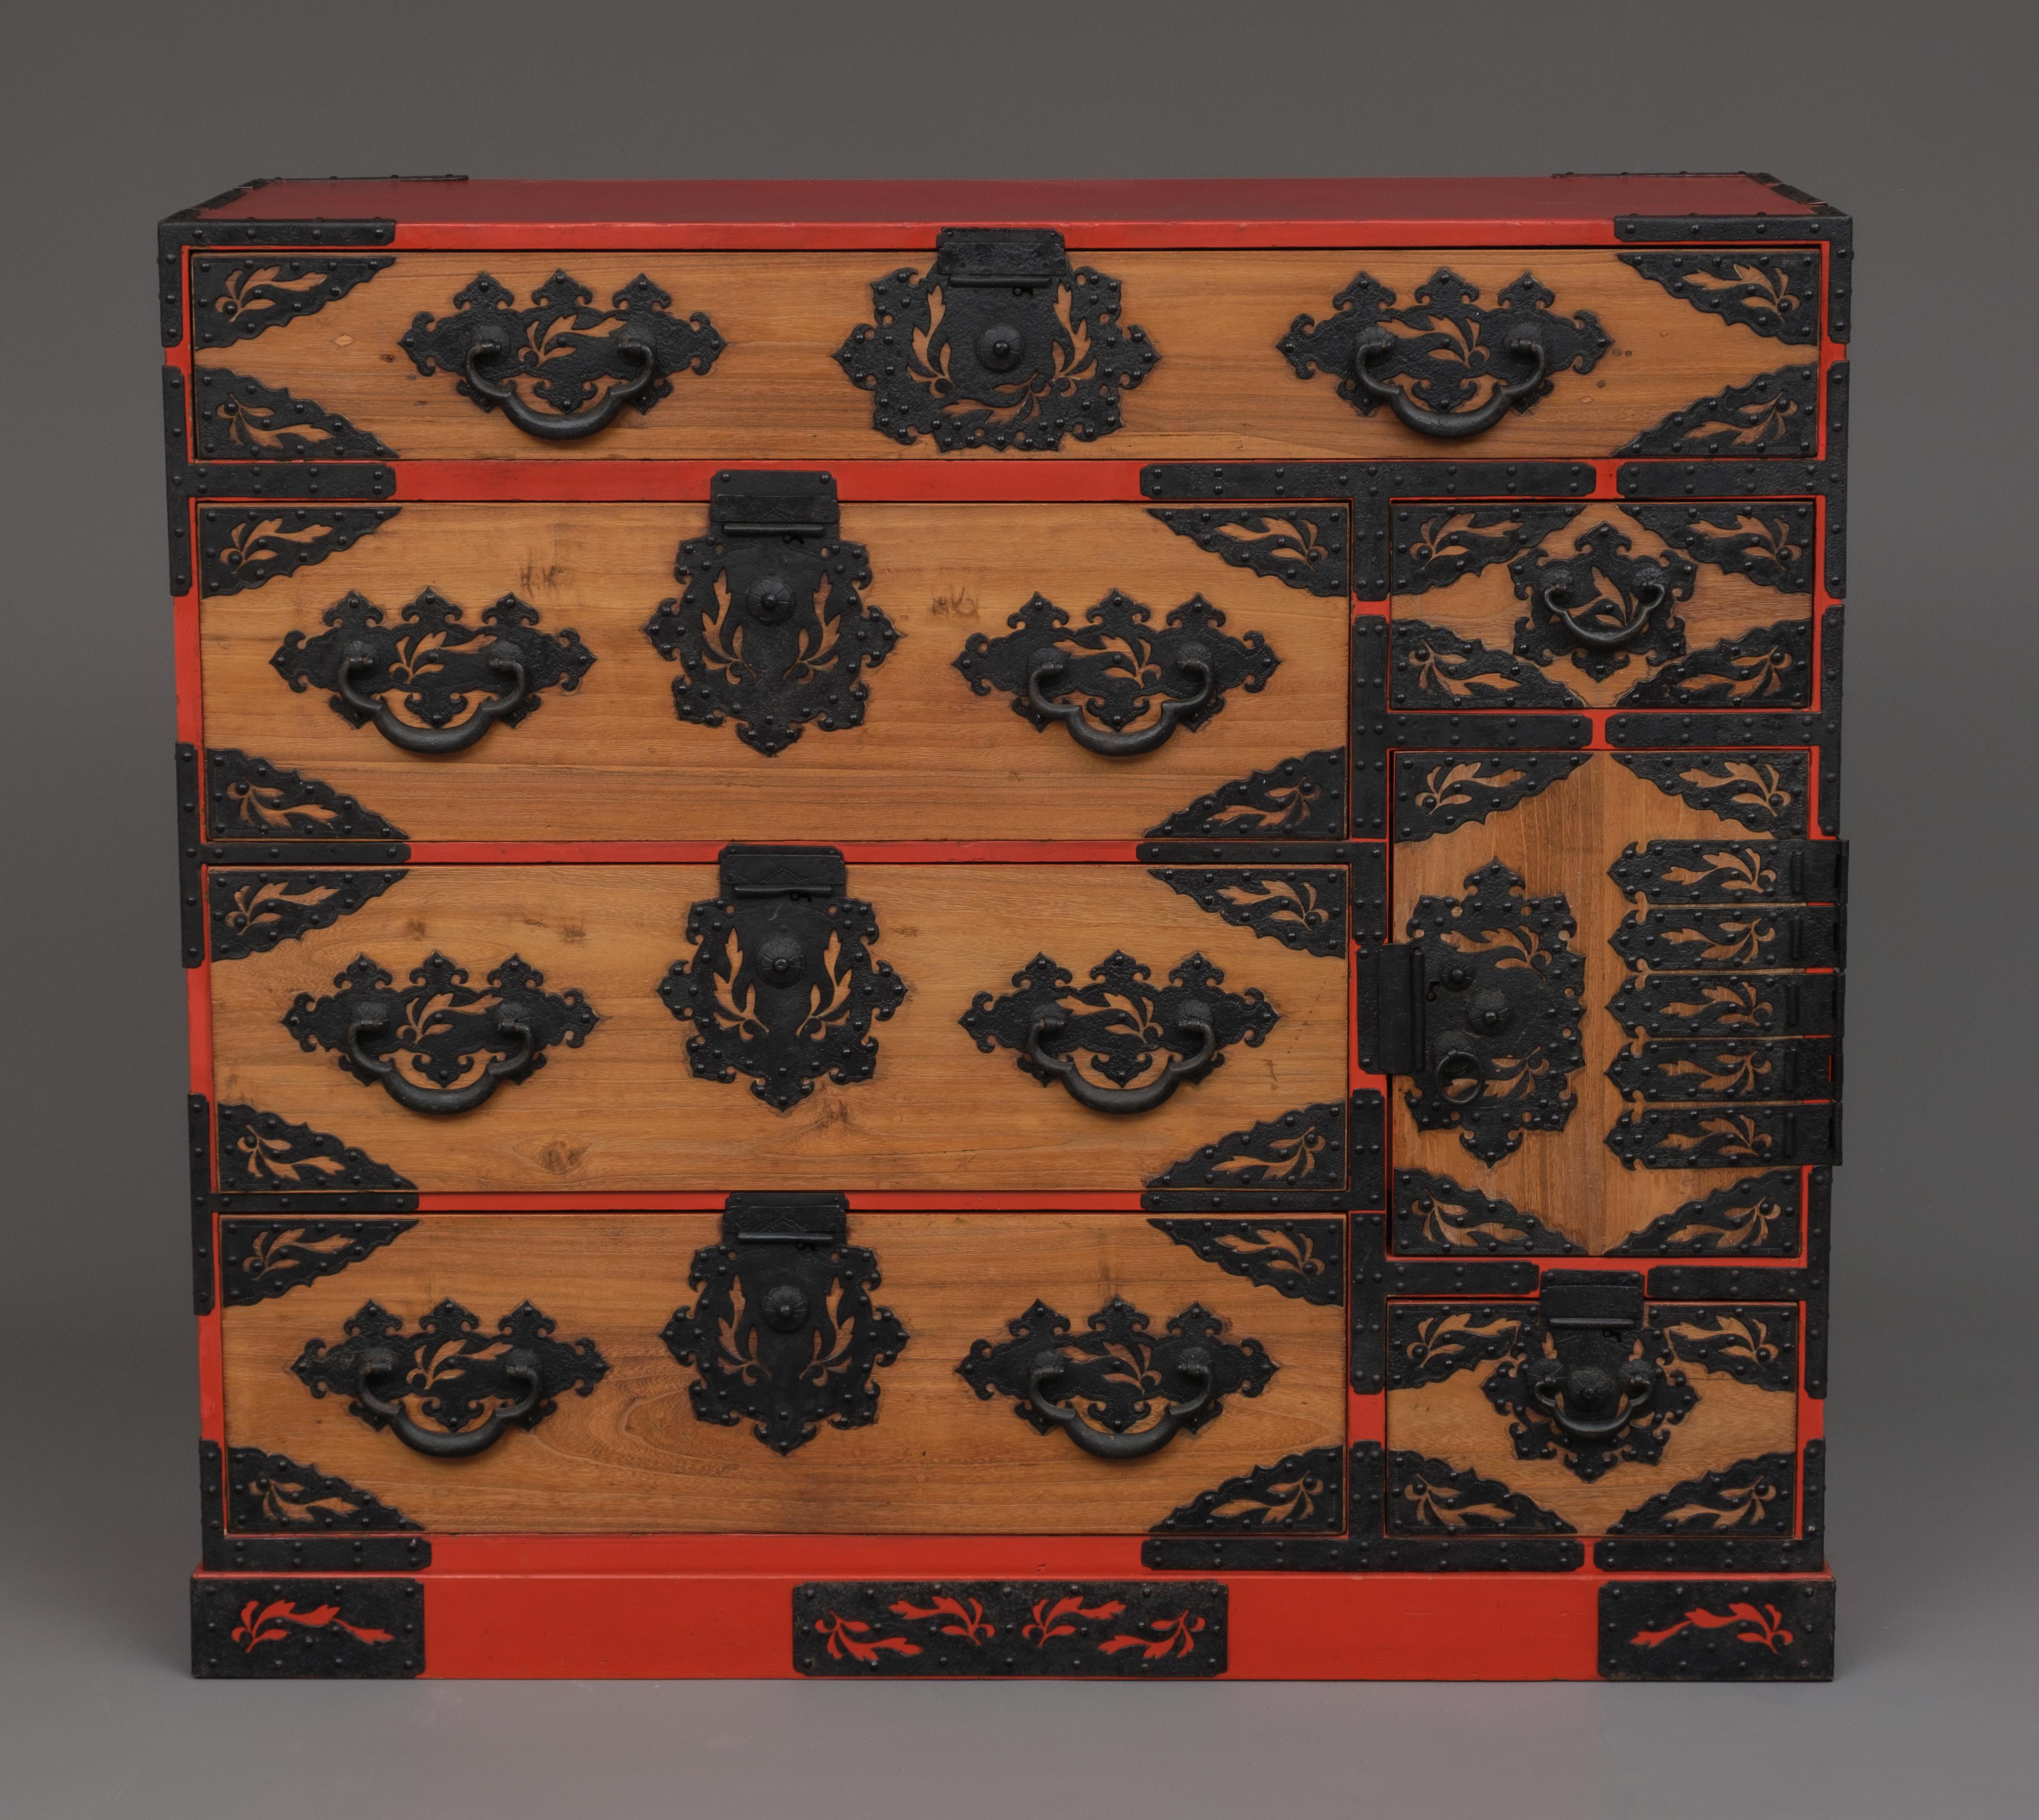 Seltener und reich verzierter hölzerner Kyûshû ishô'dansu (Schubladenschrank) in einer einzigen Abteilung, auf einem Sockel. 
Vollständig restauriert, gereinigt und gewachst.

Die Fronten der Schubladen bestehen aus einheimischem Kiri-Holz